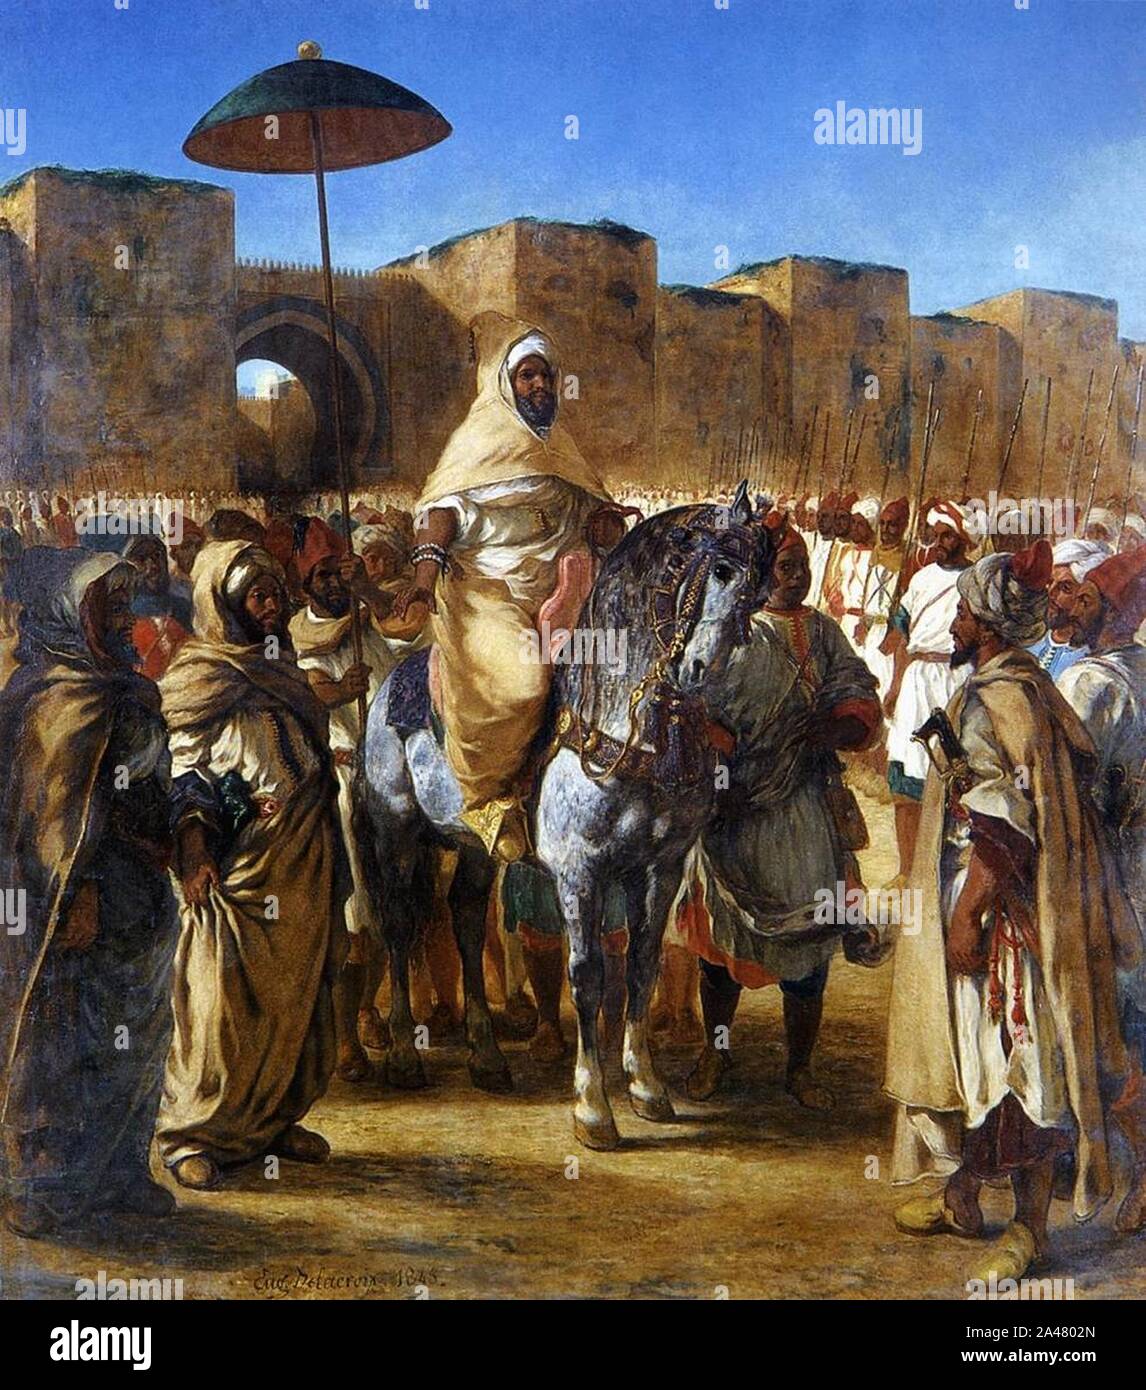 Ferdinand-Victor-Eugène DELACROIX - Moulay Abd-er-Rahman, sultan du Maroc, sortant de son palais de Meknes, entouré de sa garde et de ses principaux officiers. Stock Photo